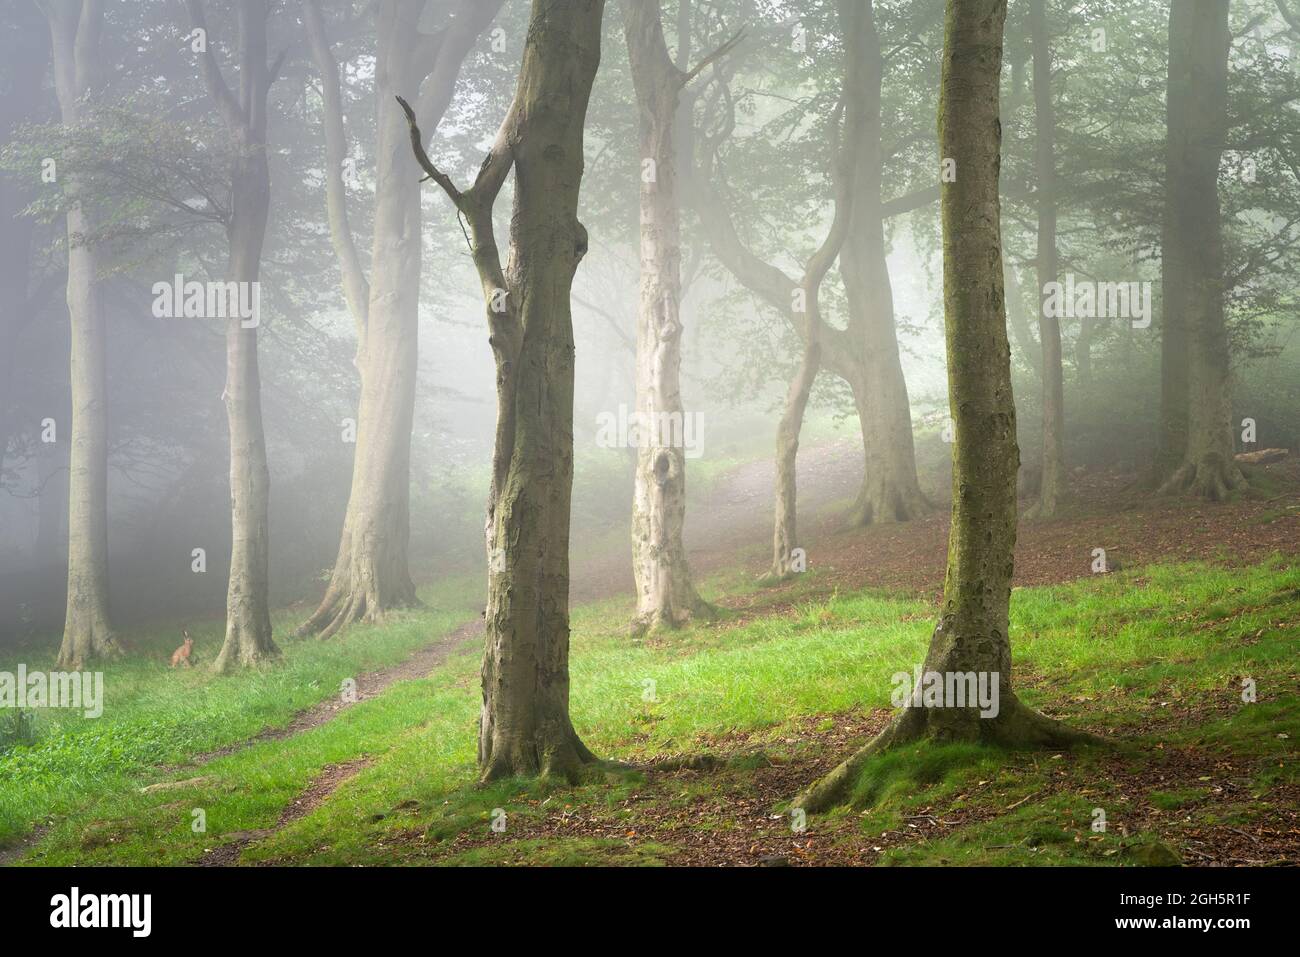 Une scène de forêt brumeuse dans le parc forestier d'Otley Chevin est rehaussée par l'ajout inattendu d'un lièvre qui s'amblait dans le cadre. Banque D'Images